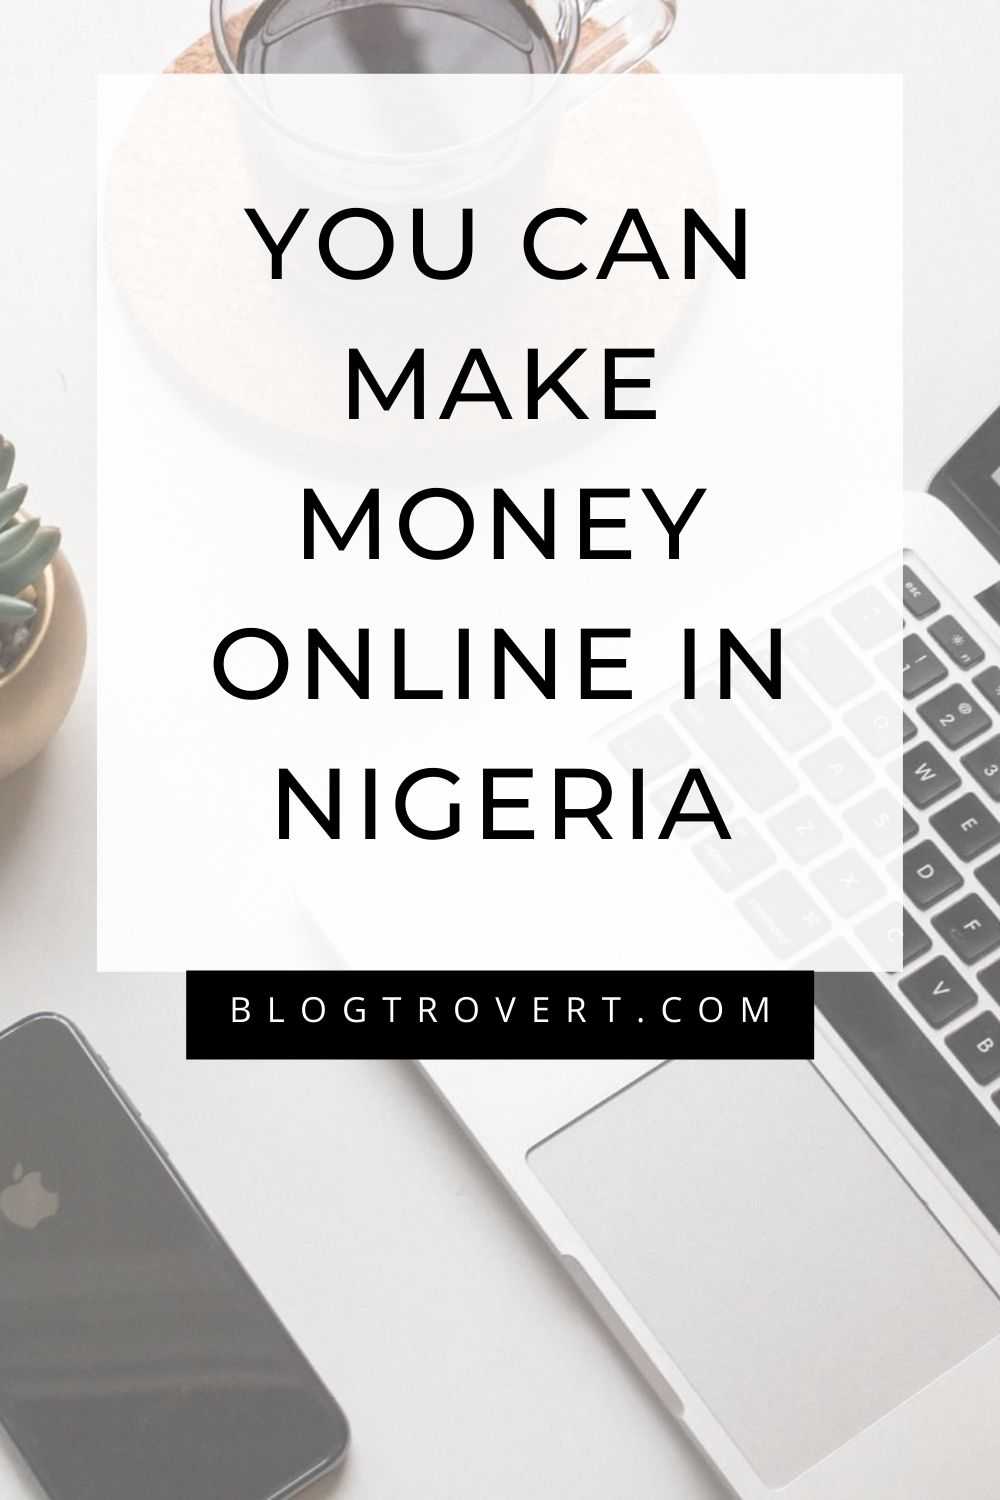 Top 10 creative ideas to make money online in Nigeria - 2022 1